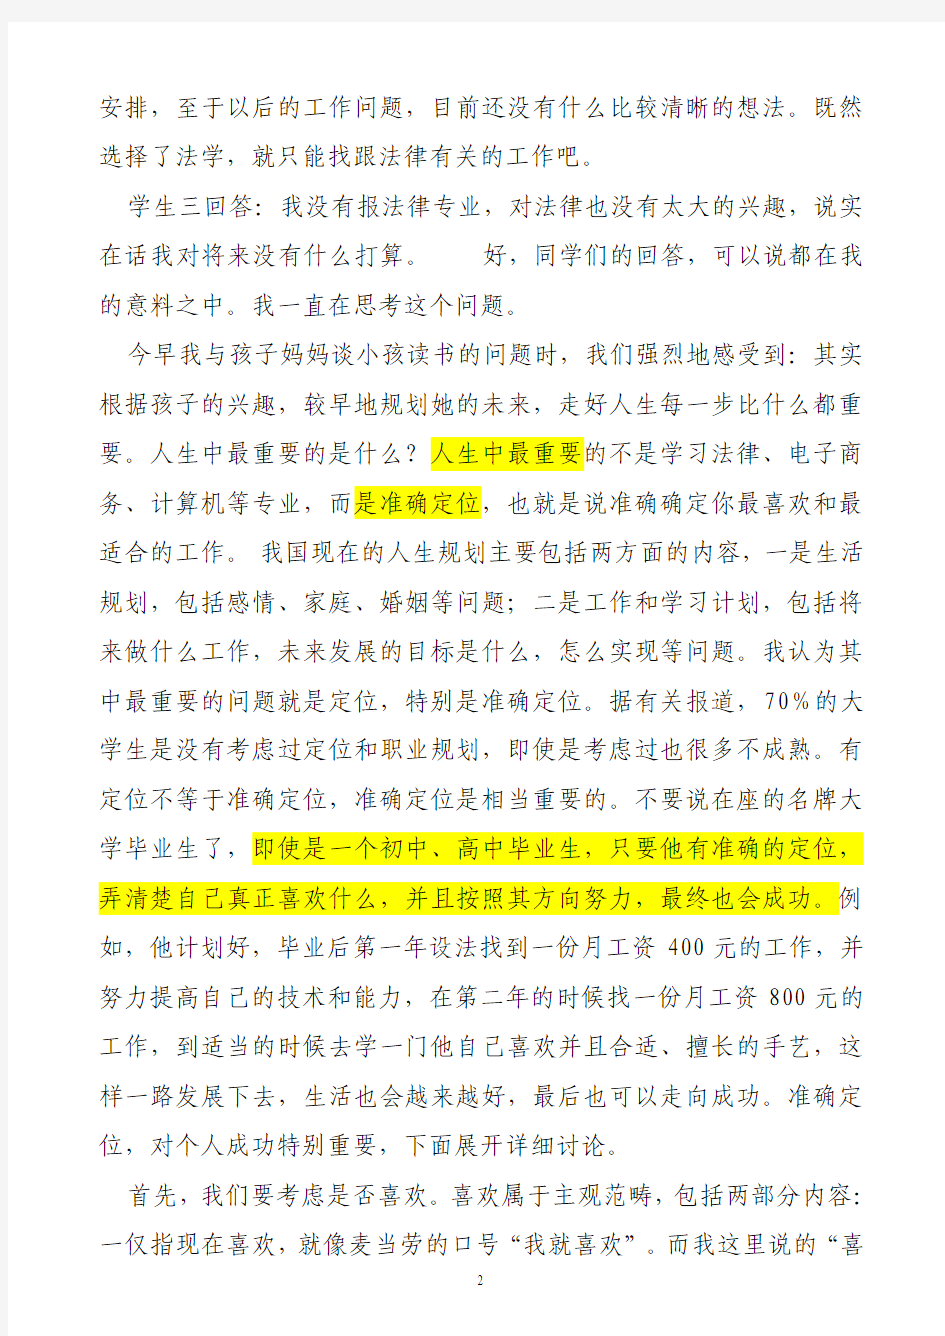 读最有用的书,找最适合的工作──寄语中国法律未来之星